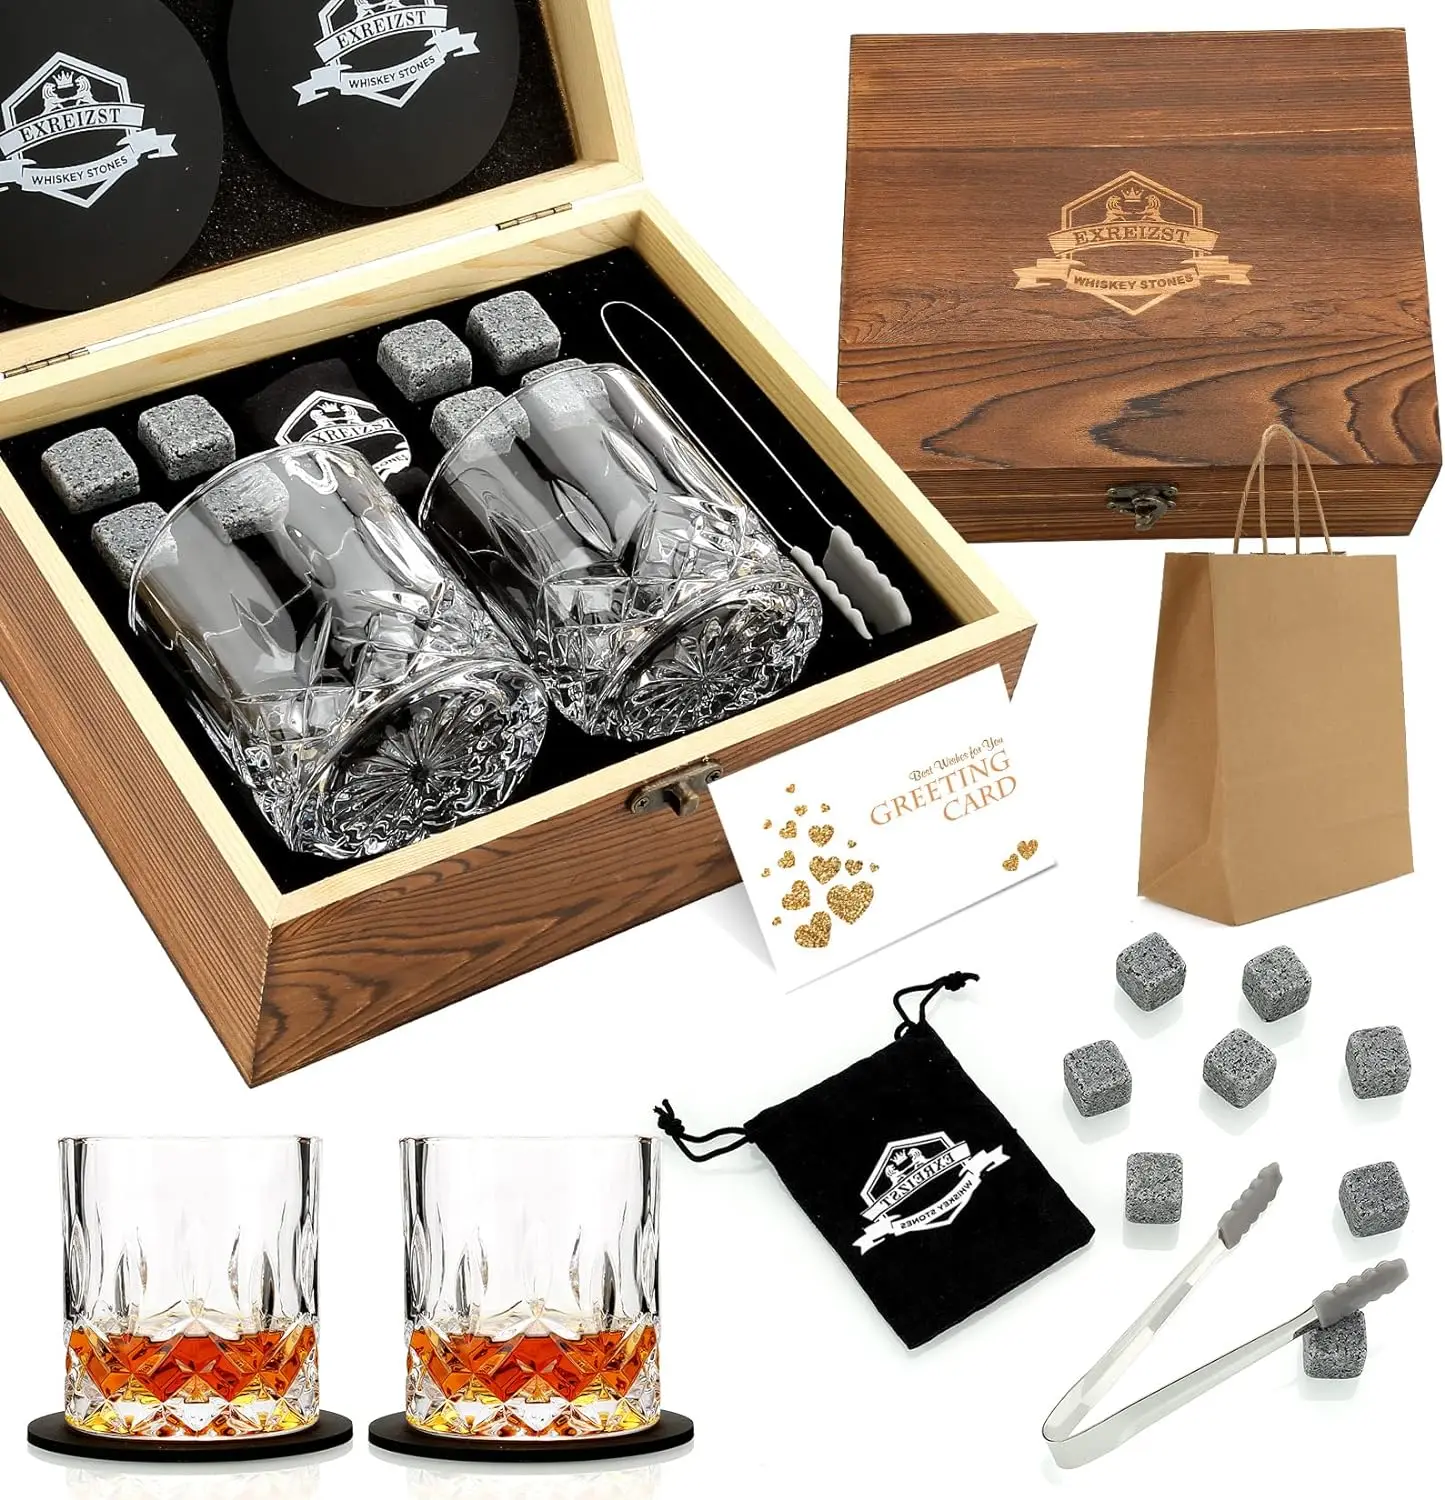 Whiskey Stones & Glasses Set, Granite Ice Cube For Whisky, Whiski Chilling  Rocks In Wooden Box, Best Gift For Dad Husband Men